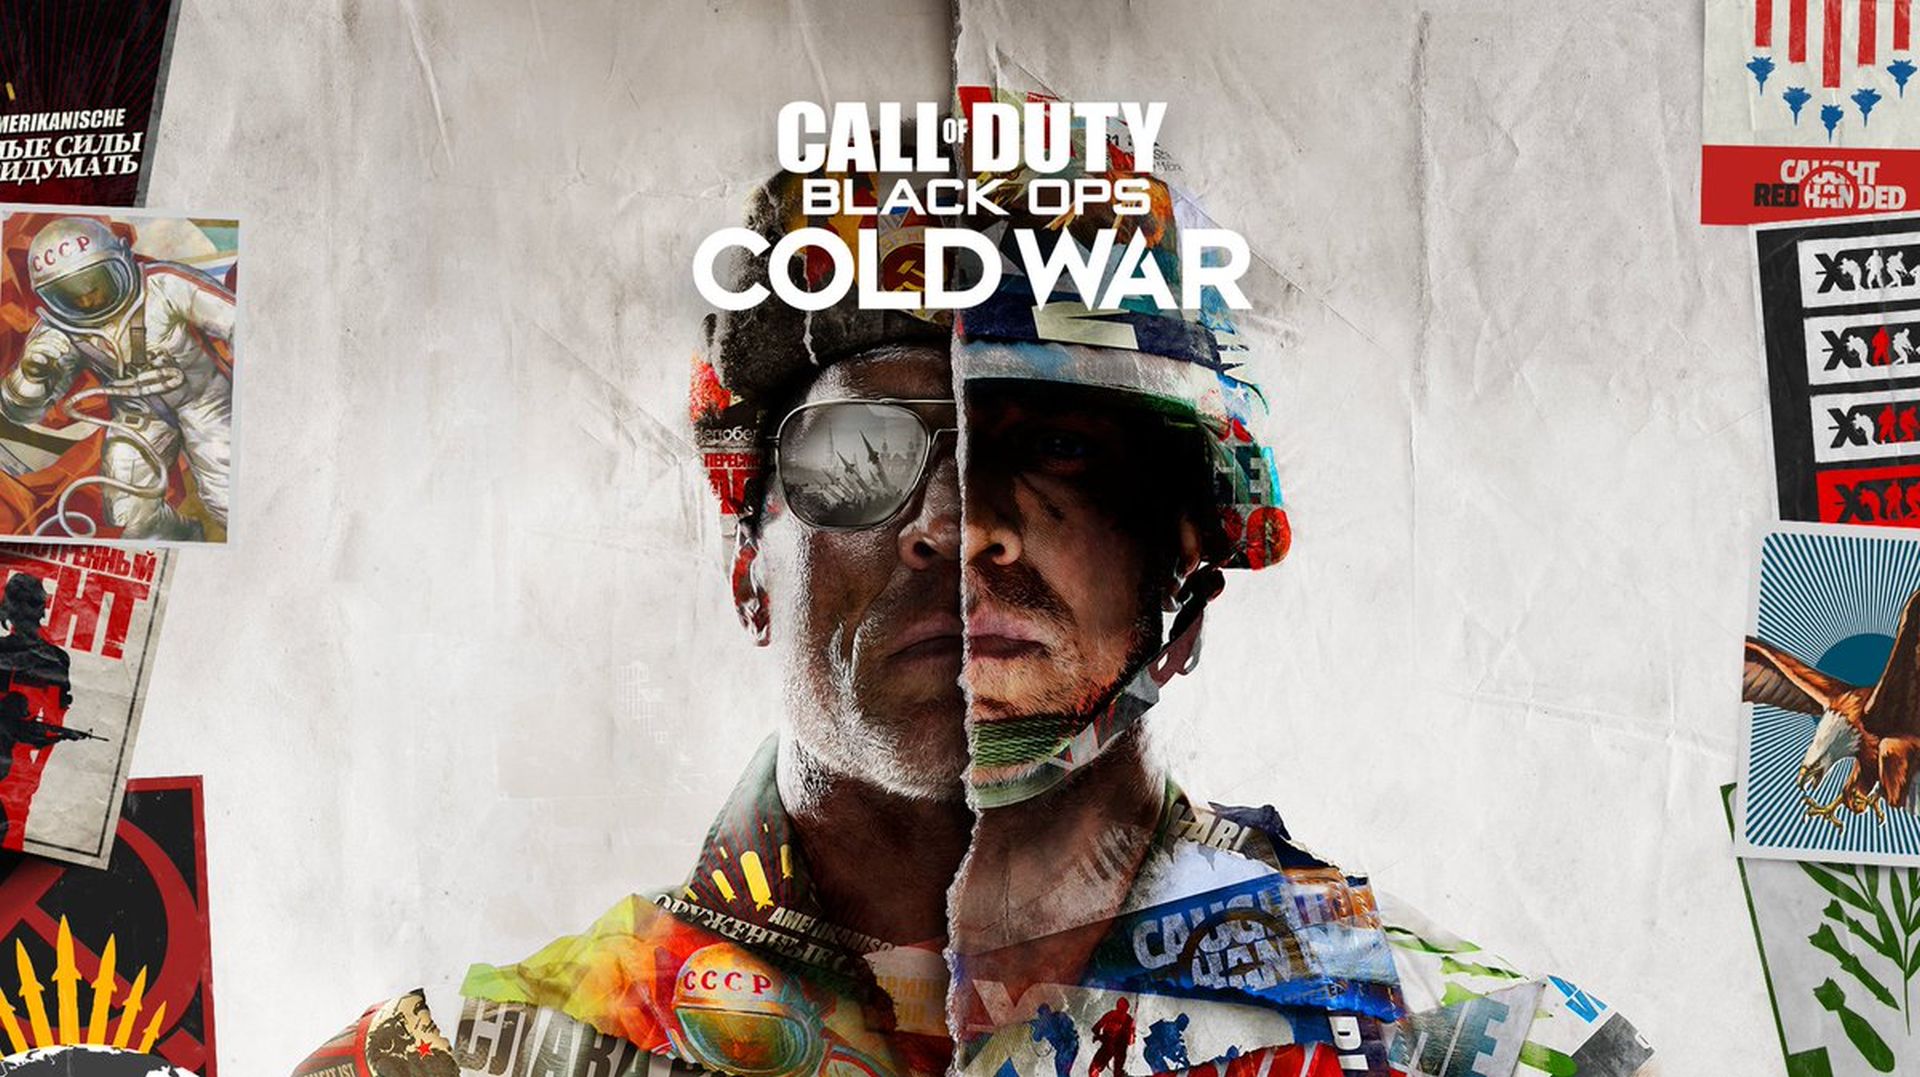 Call of Duty Black Ops Koude Oorlog 01